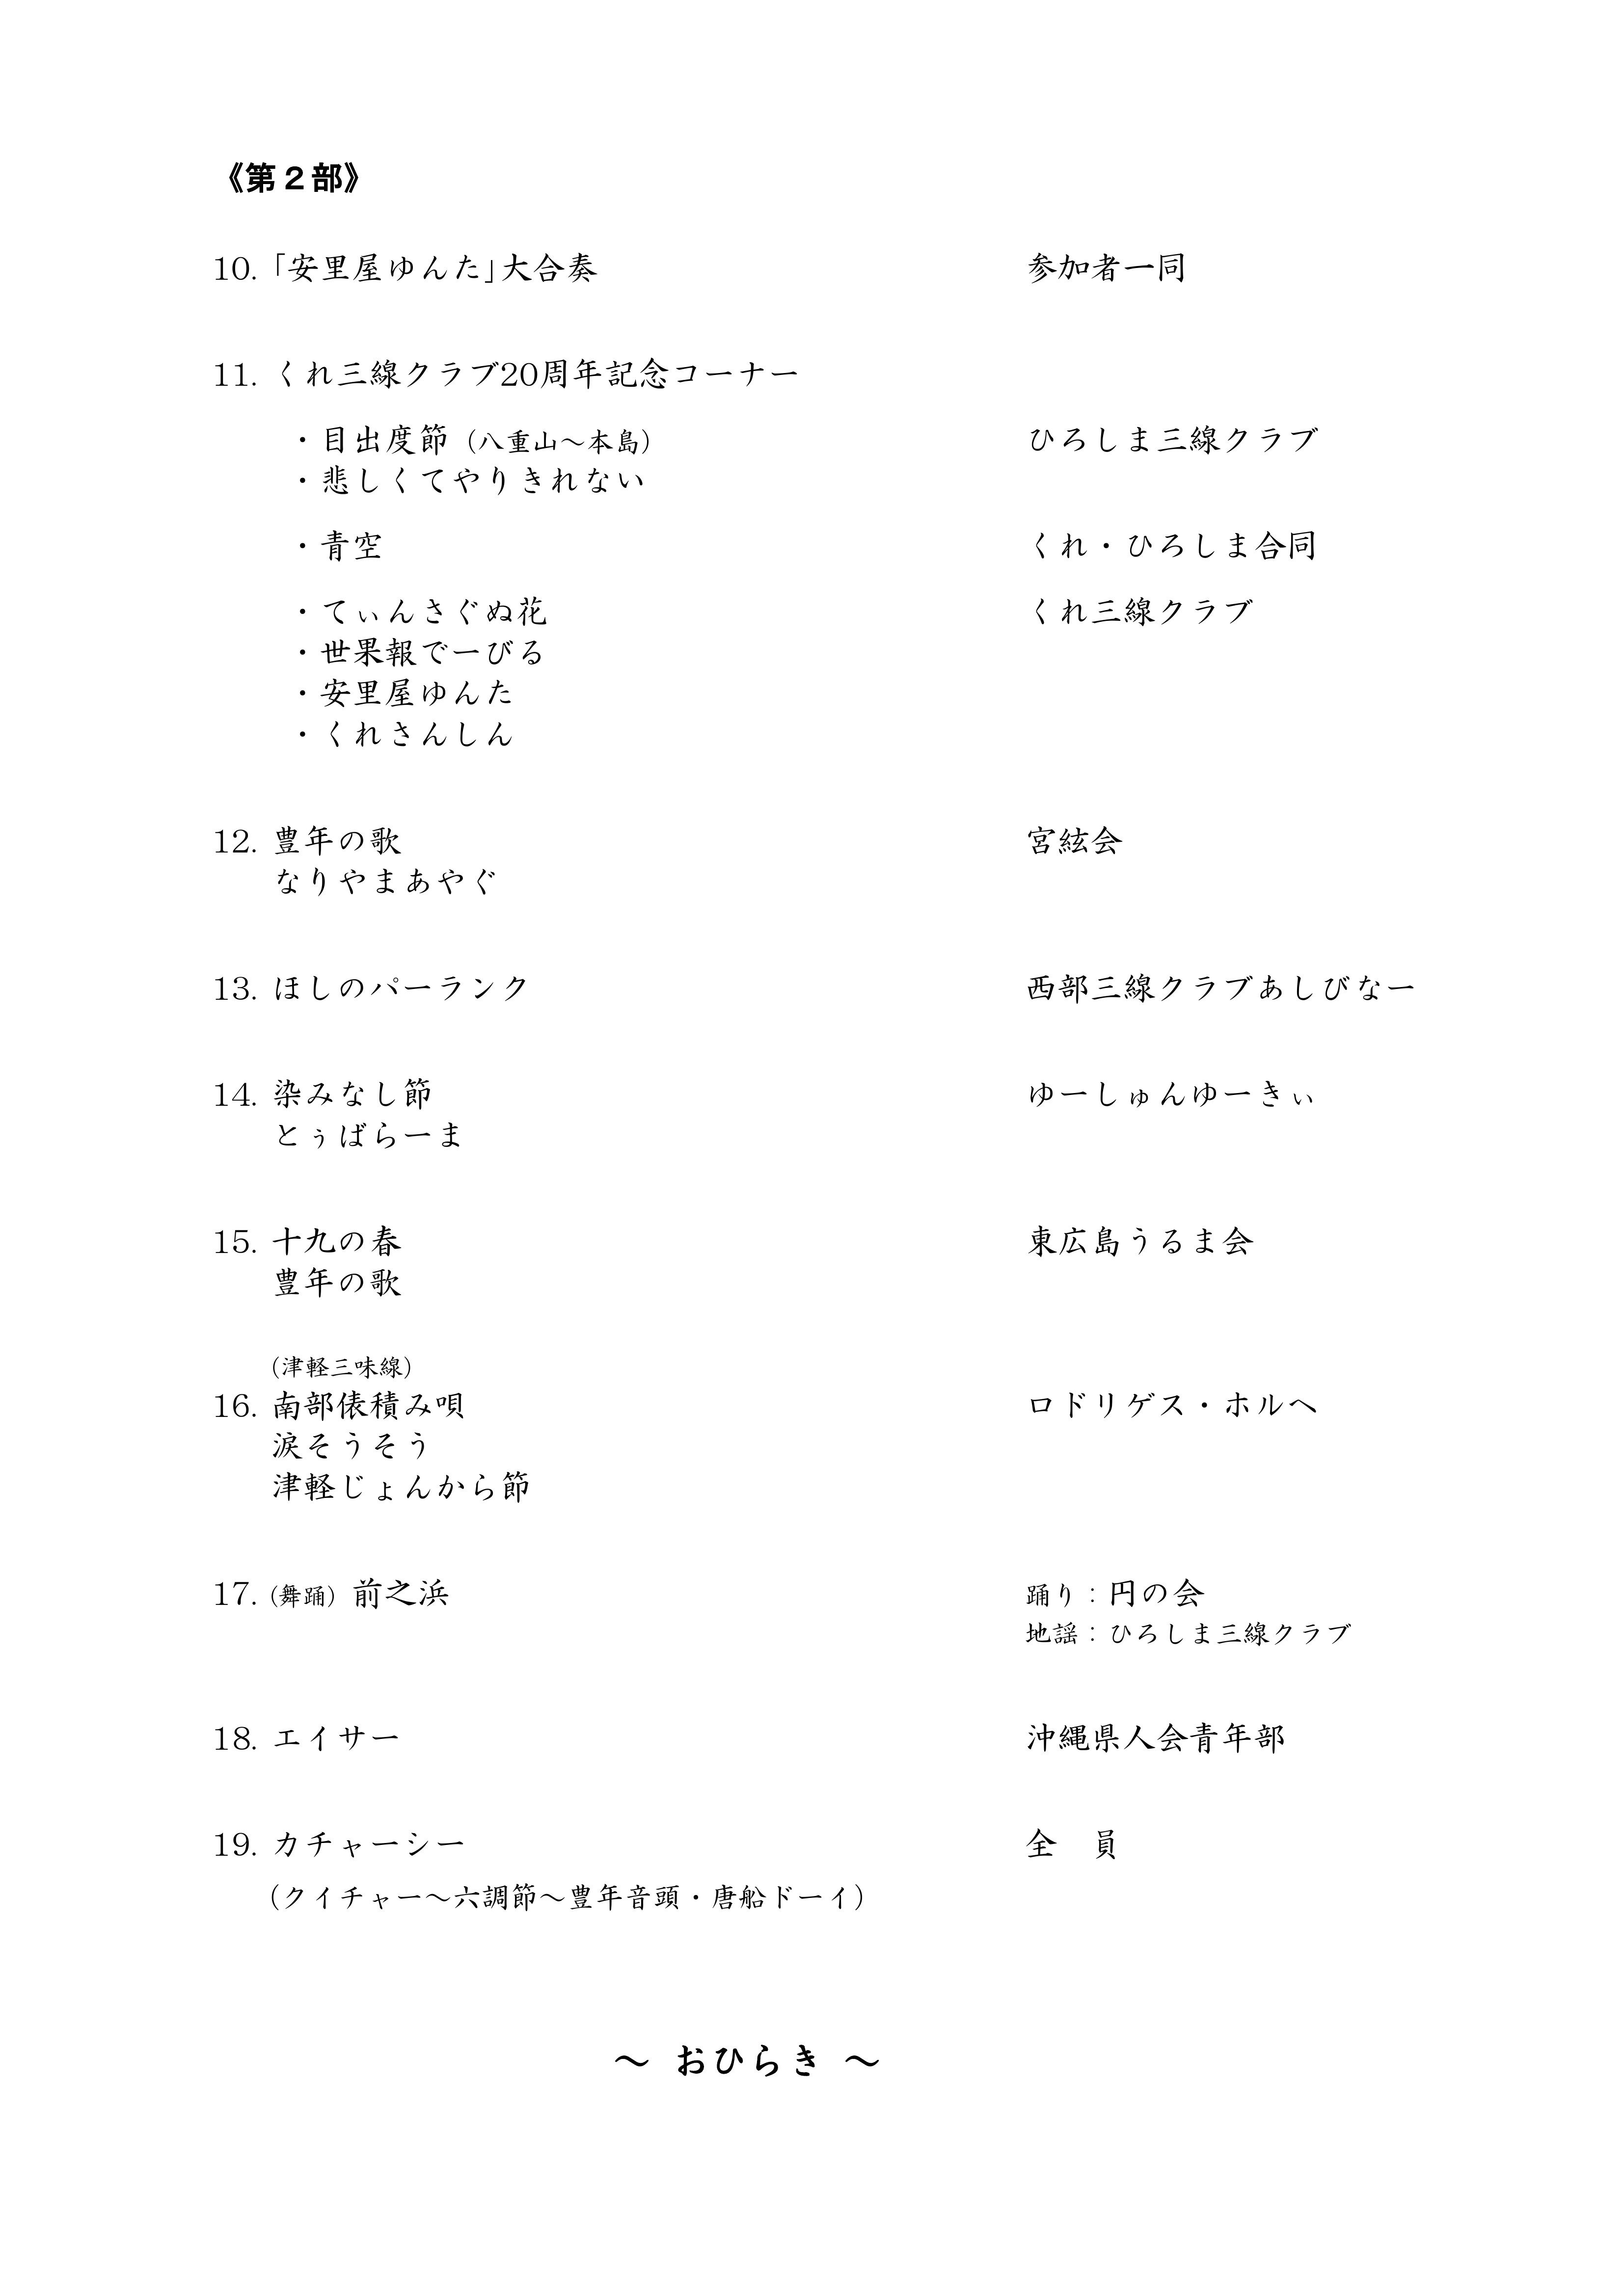 「ひろしま三線クラブ24周年記念コンサート」プログラム_PAGE0002